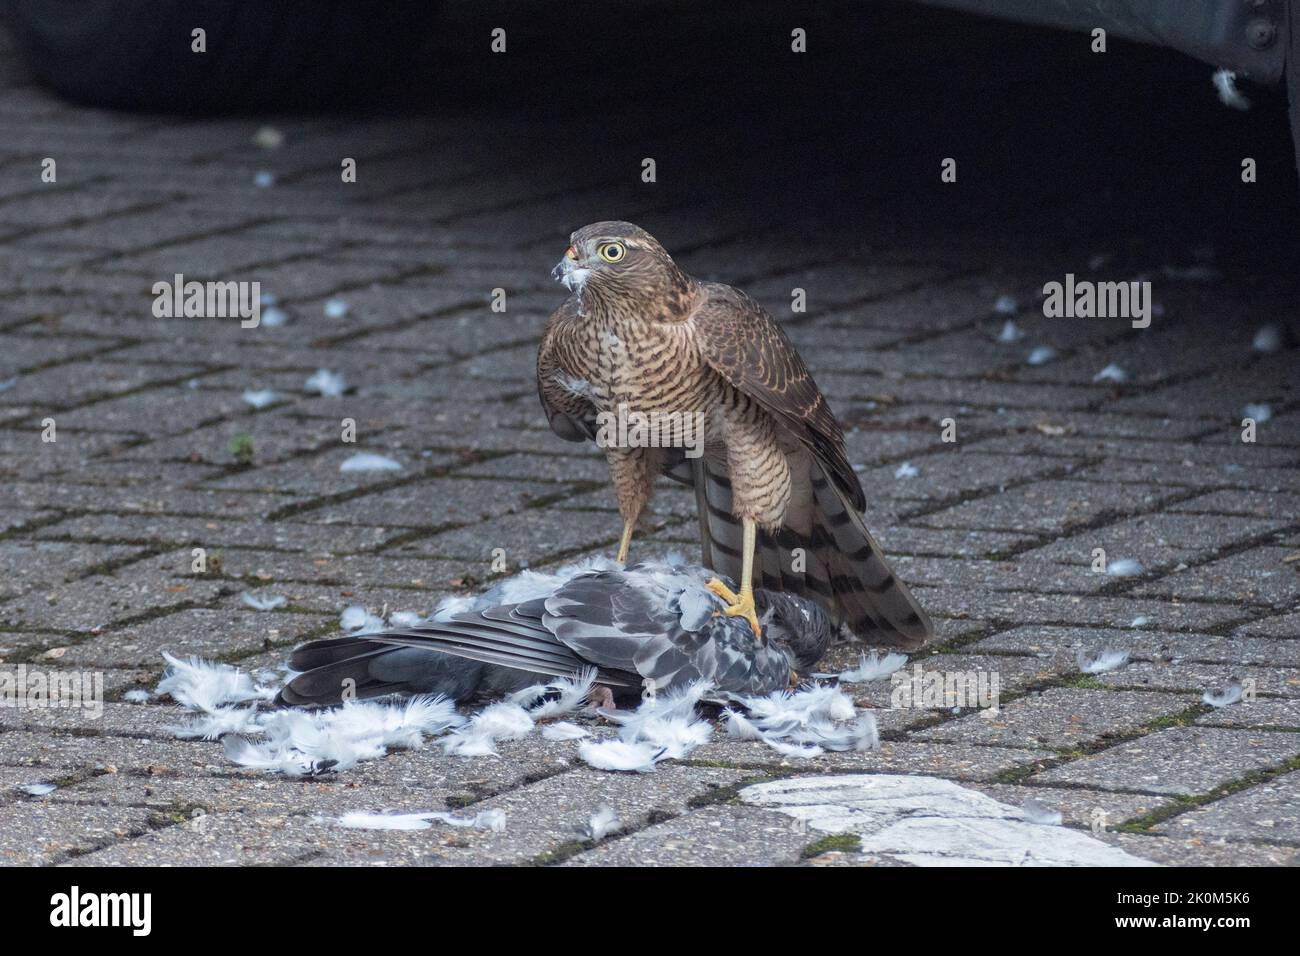 Nahaufnahme eines eurasischen Sparrowhawks (Accipiter nisus), der sich in einer städtischen Umgebung, Großbritannien, an einer toten Taube ernährt. Stockfoto